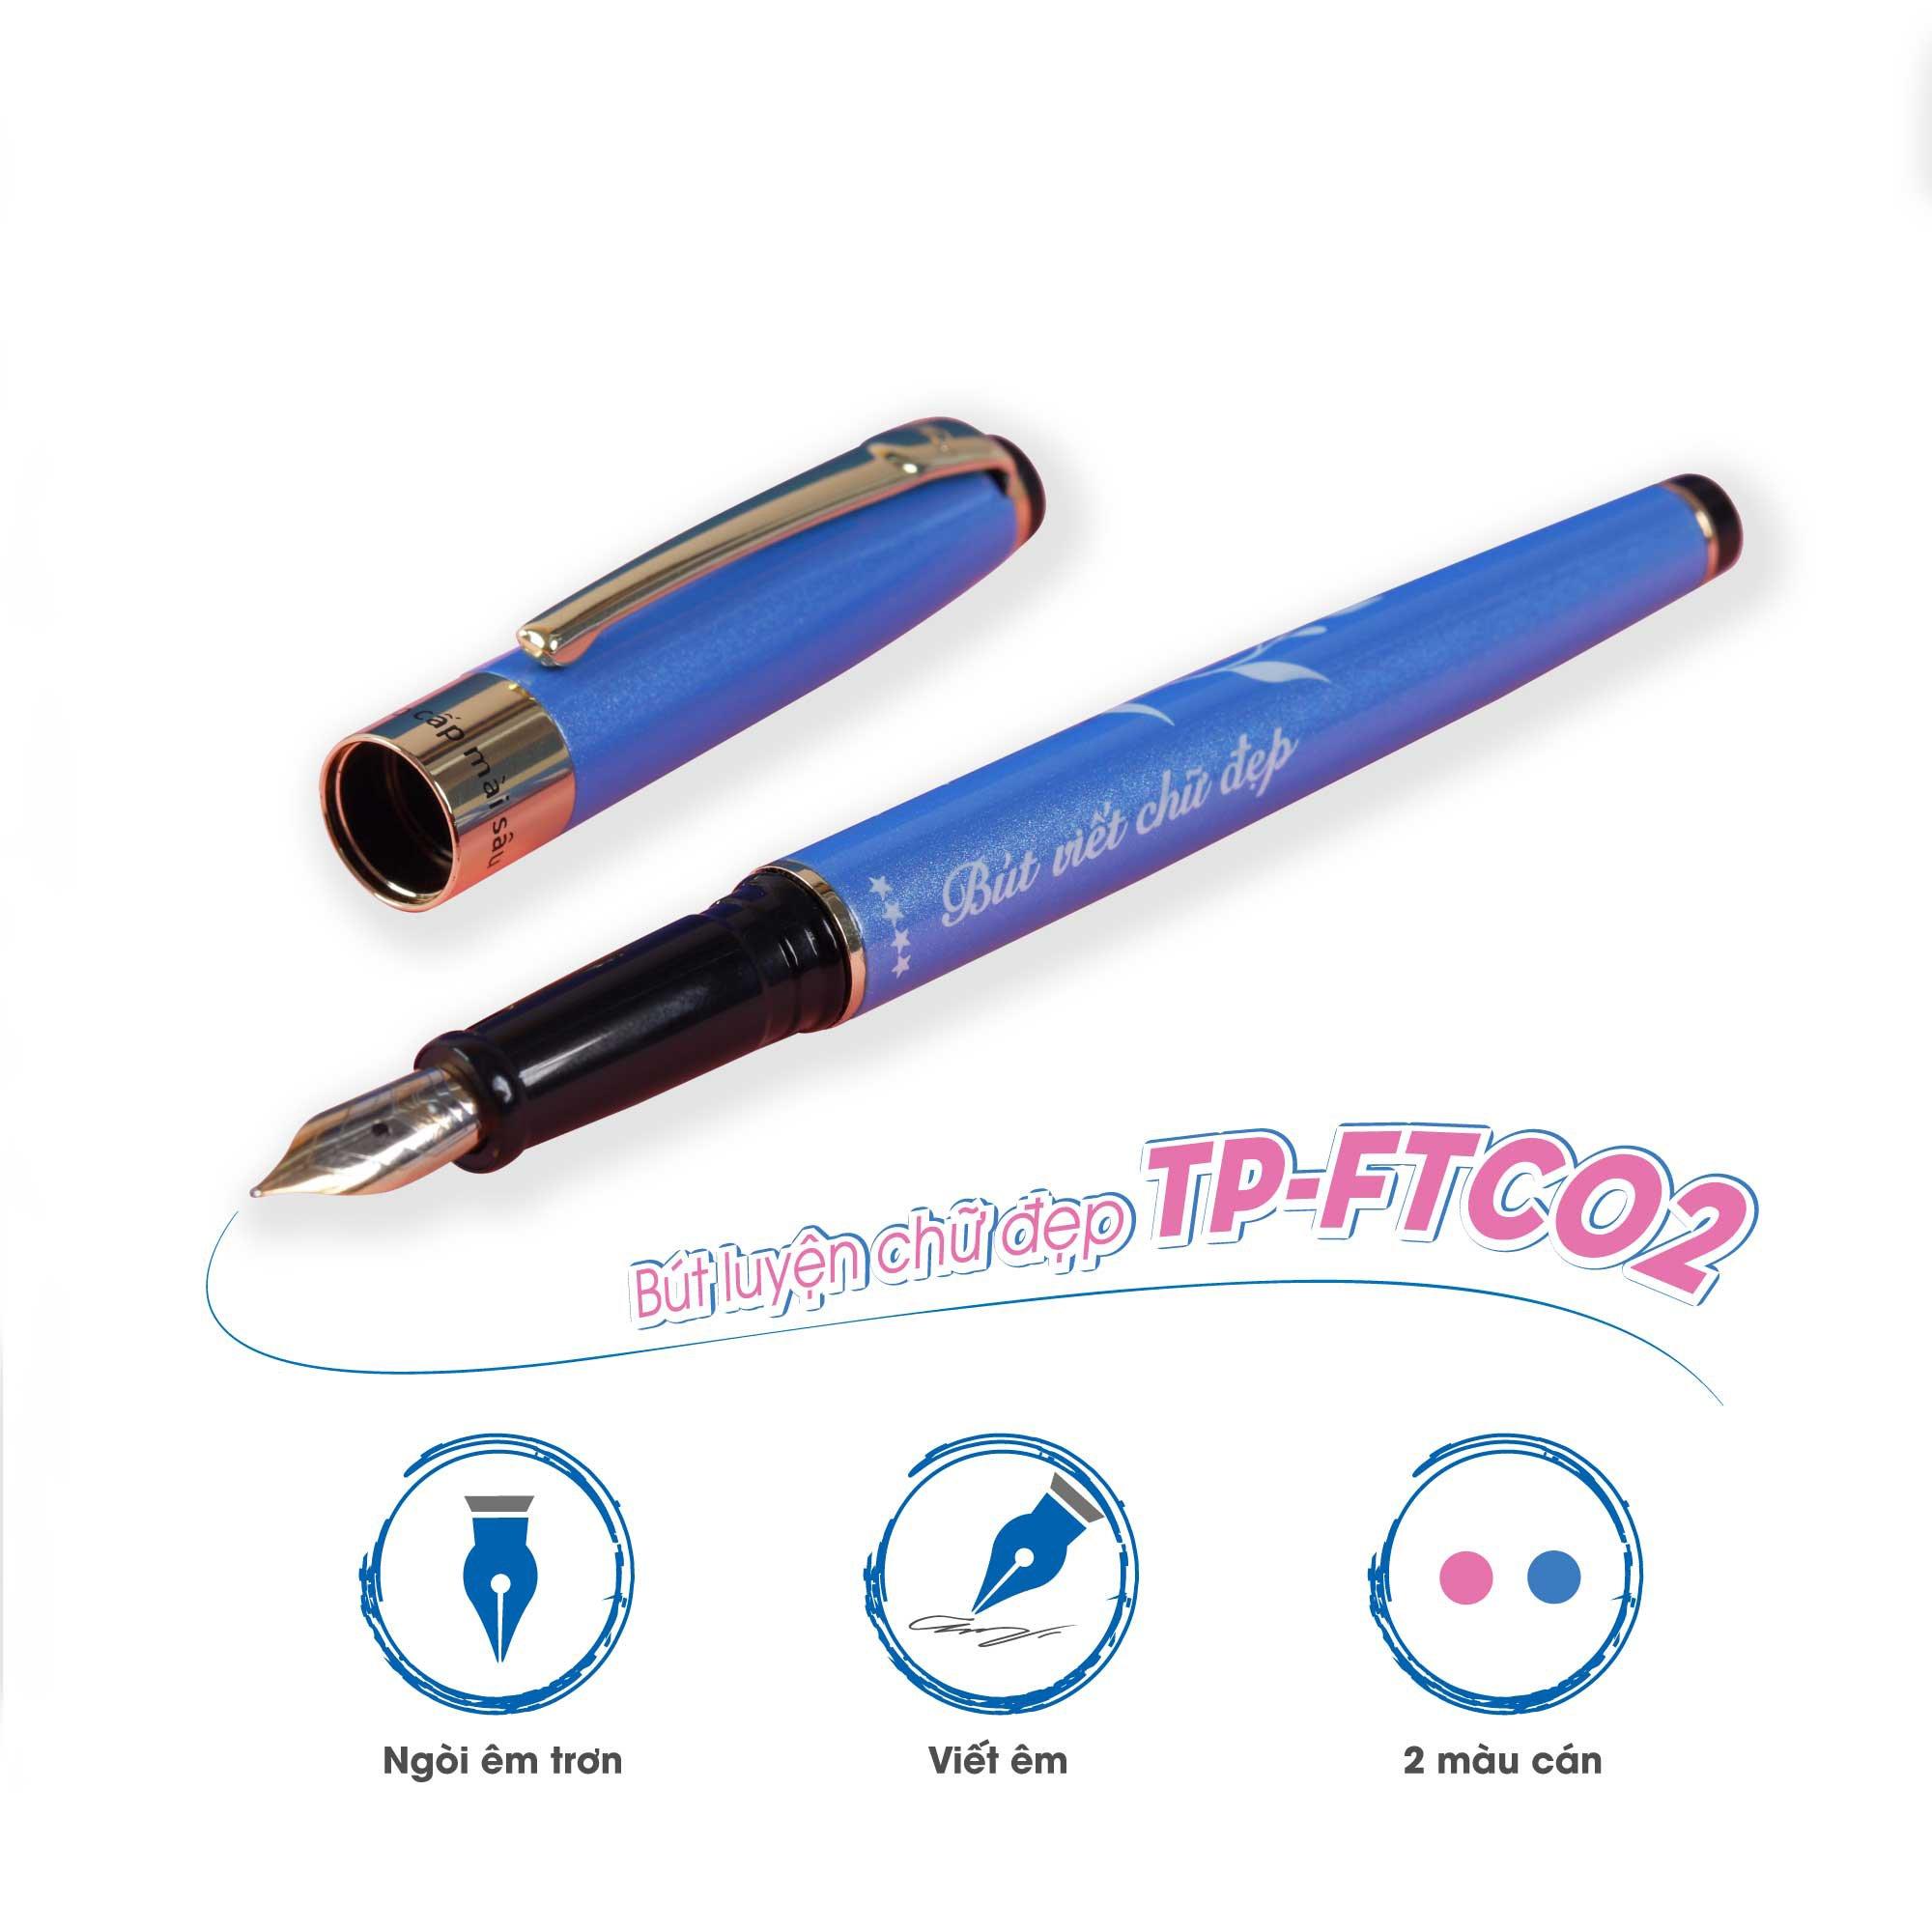 Bút máy Thiên Long TP-FTC02 - Bút viết chữ đẹp - Tặng 05 ống mực